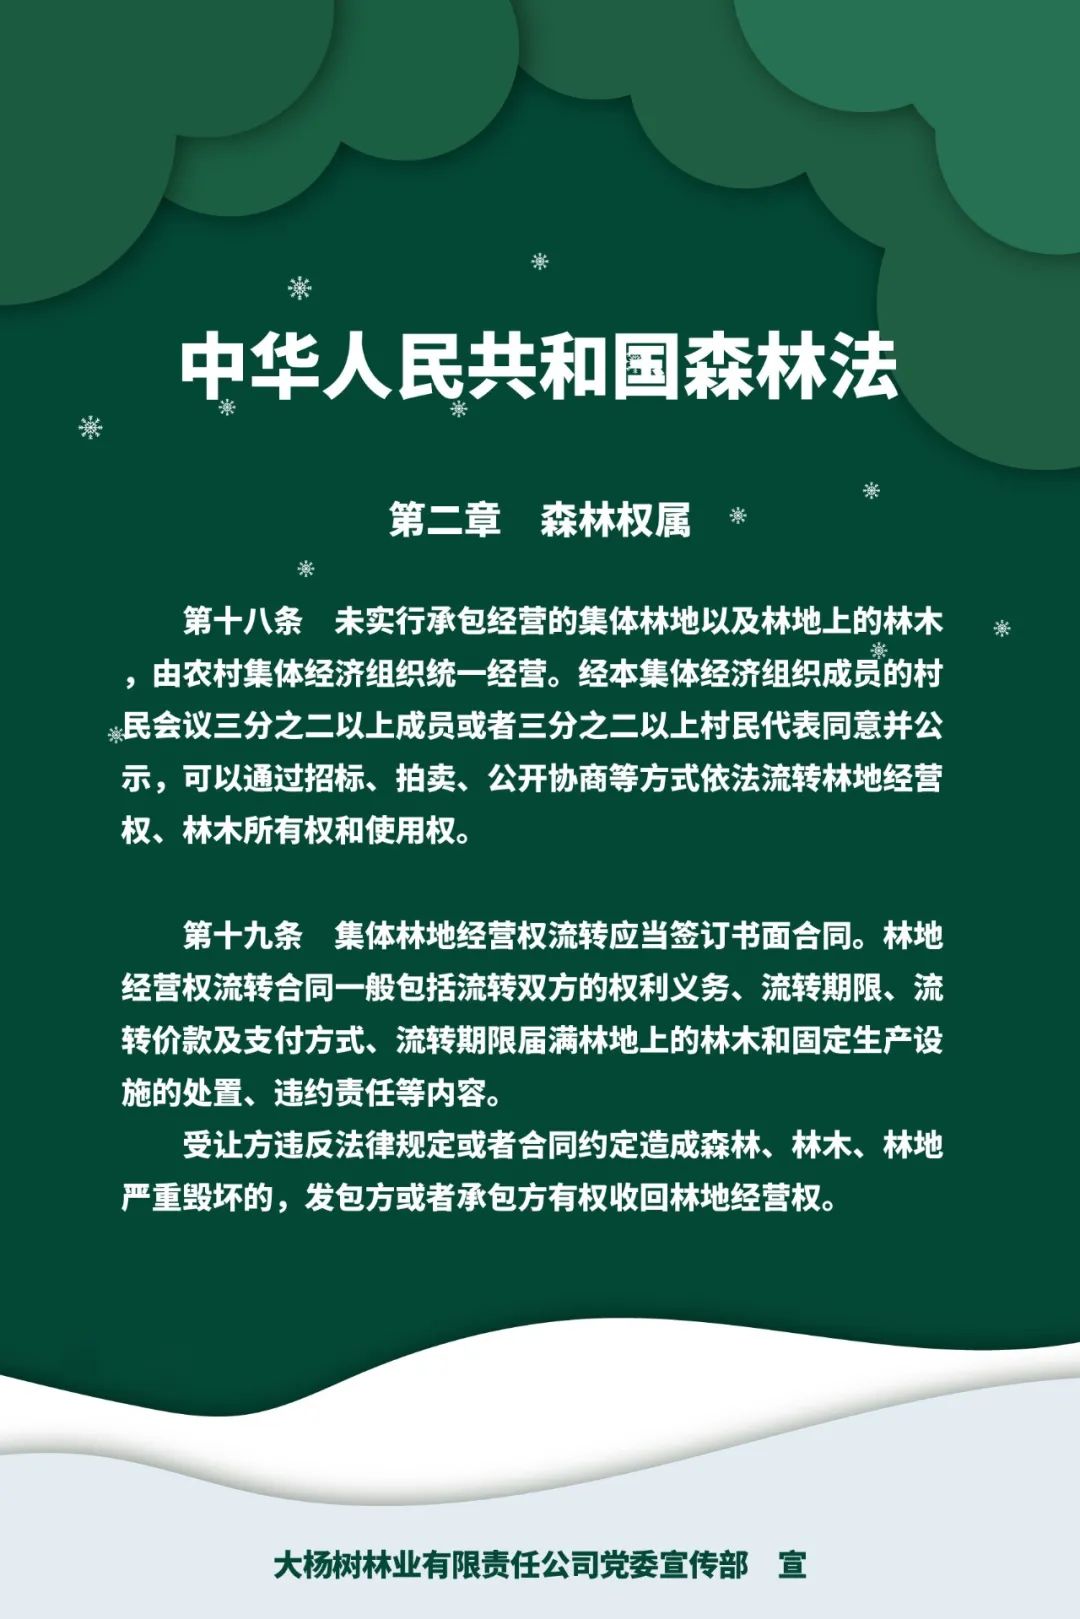 完虐
:内蒙古大阳林业股份有限公司基本信息